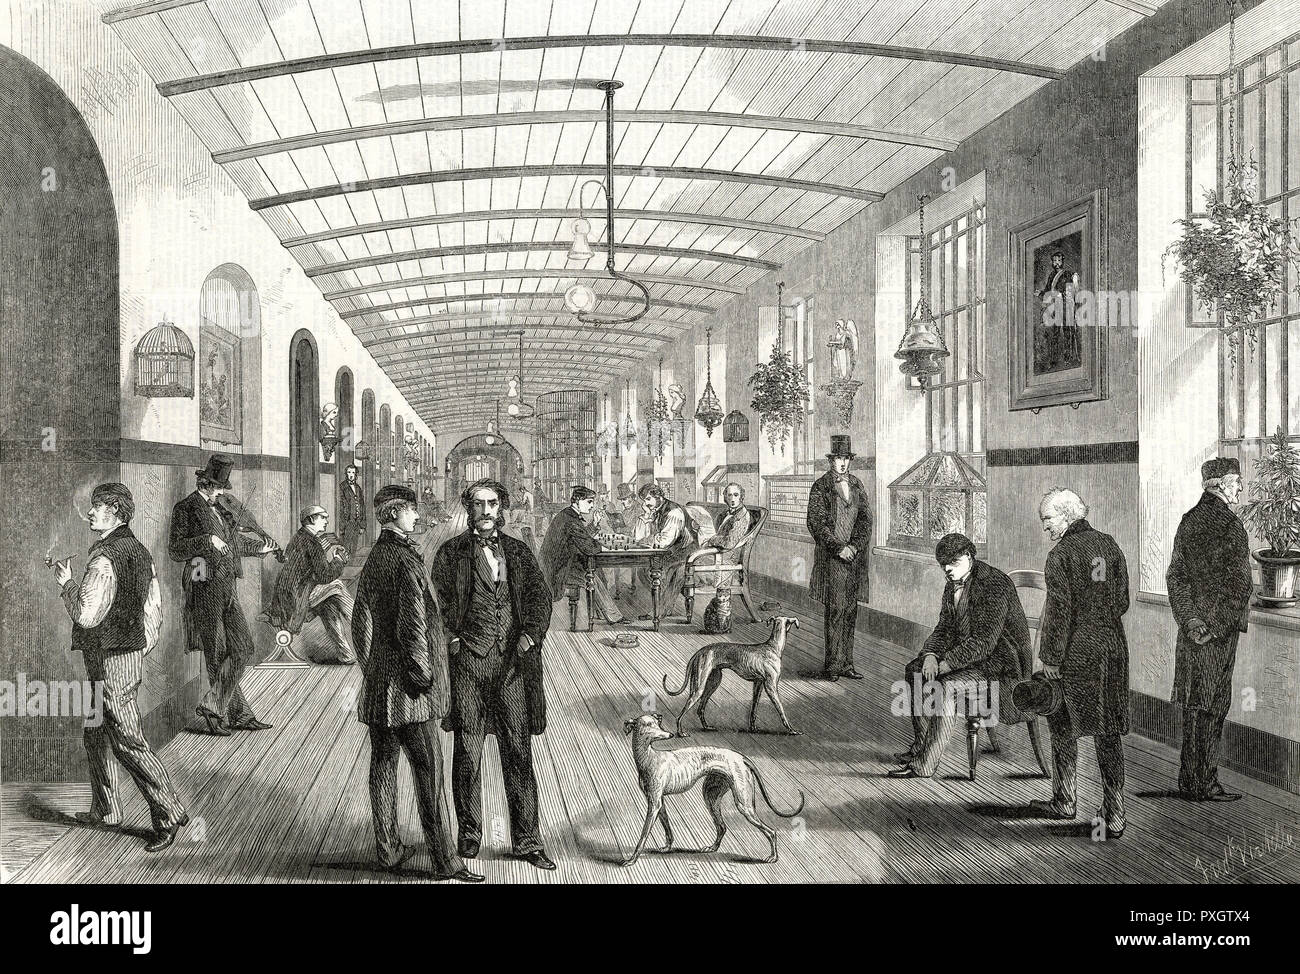 BETHLEHEM/MEN'S GALLERY 1860 Stock Photo